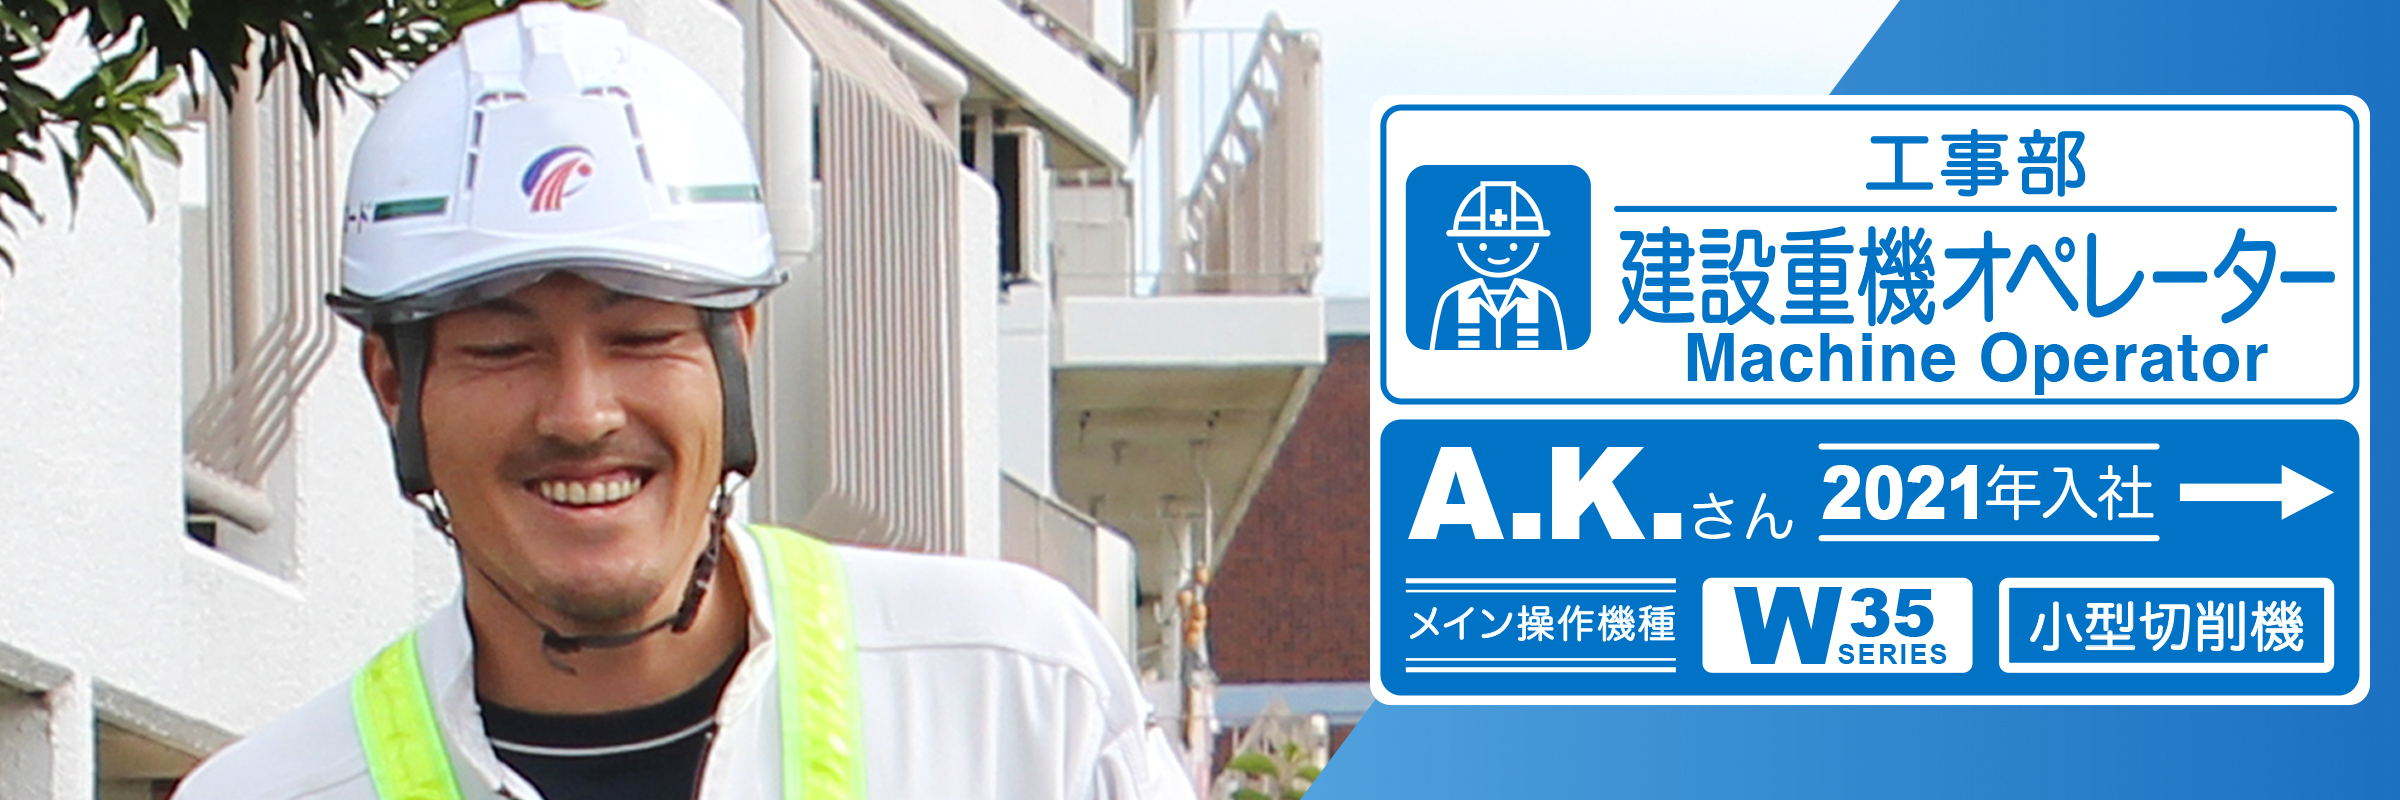 工事部 A.K.(2021年4月入社)